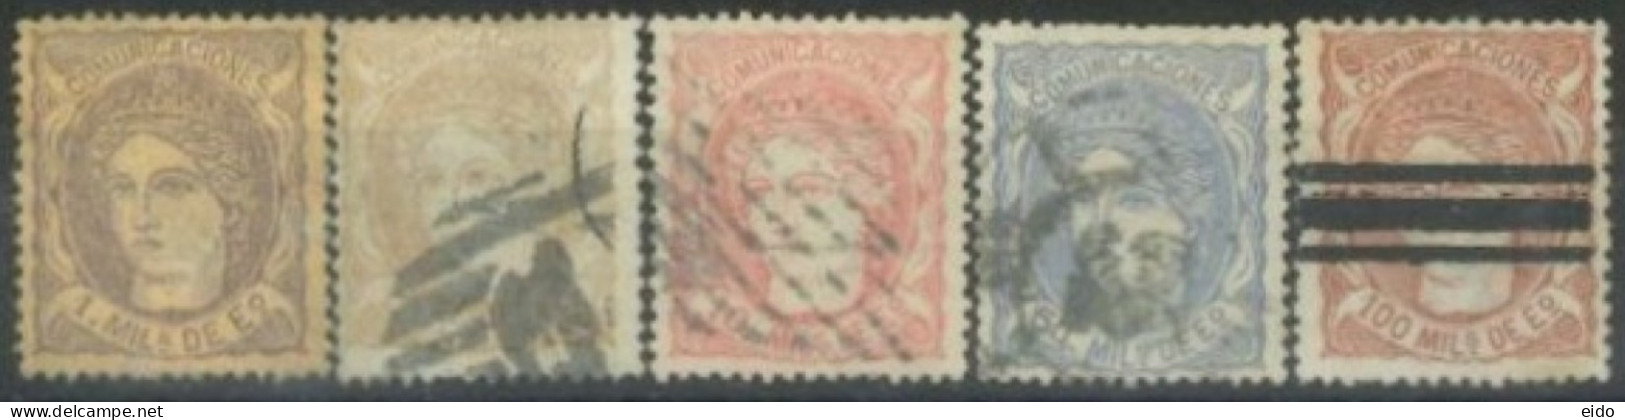 SPAIN,  1870 - ESPANA STAMPS SET OF 5, # 159, 163/64, & 166/67,USED. - Gebruikt